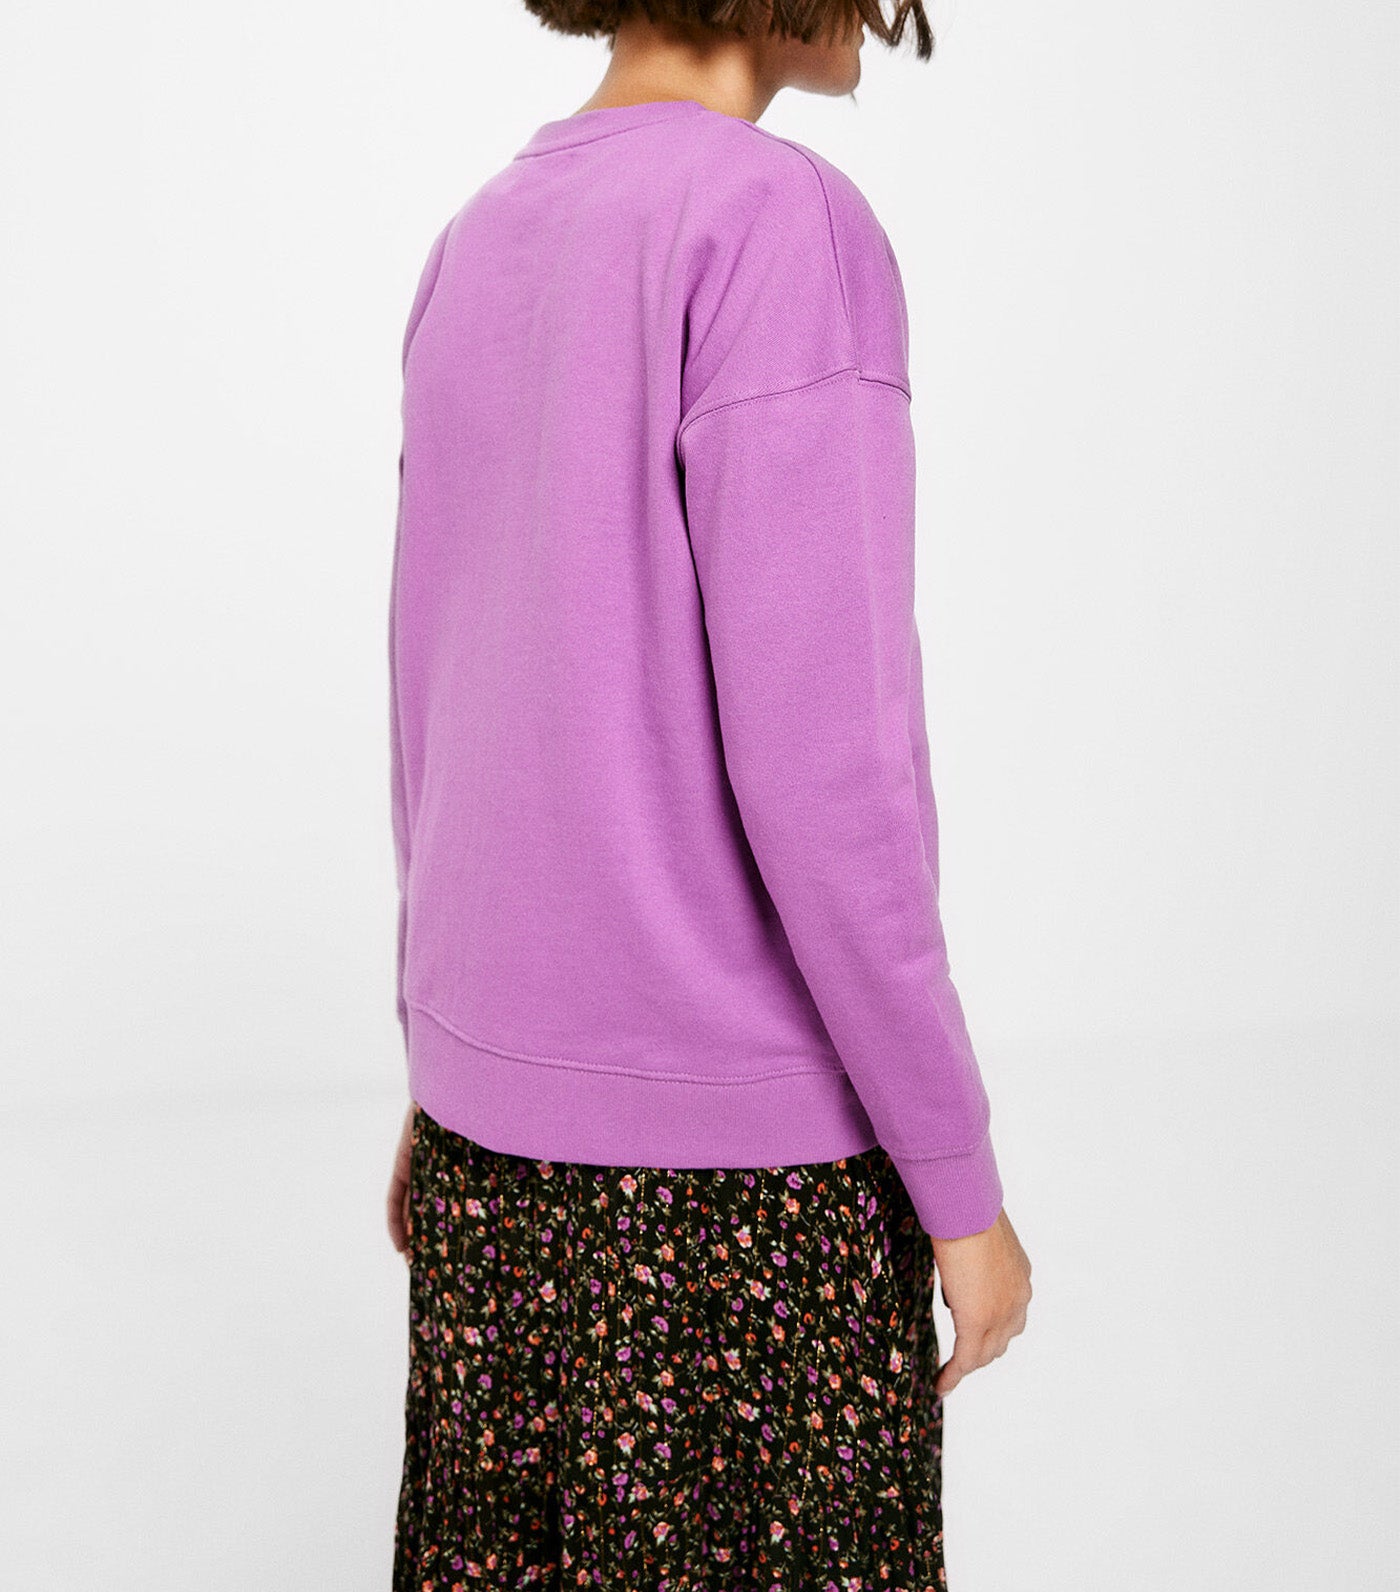 Bonheur Sweatshirt Purple